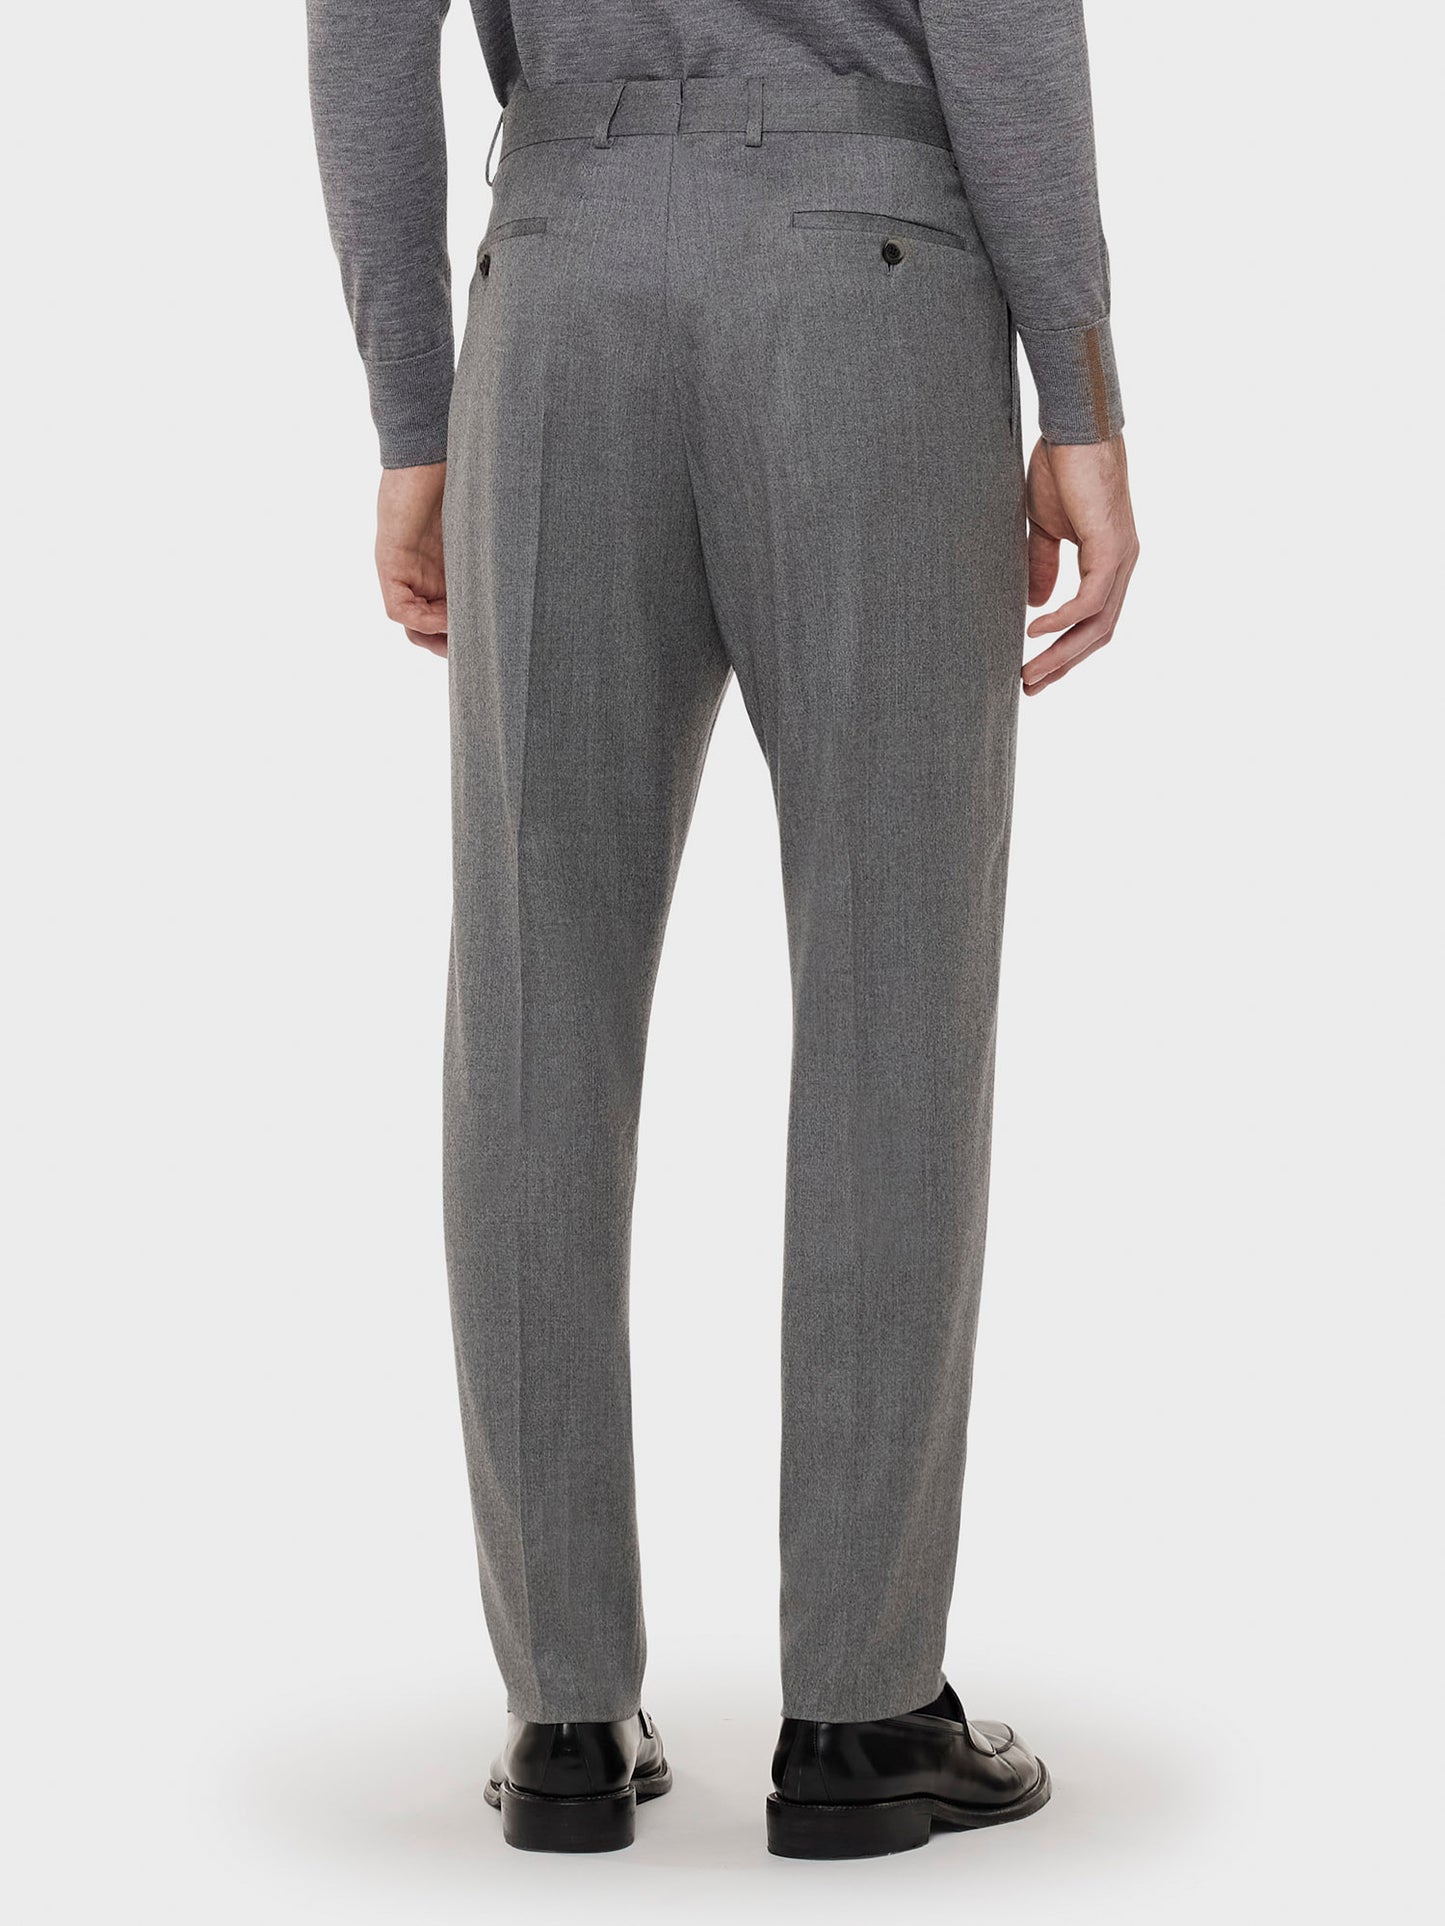 Caruso Menswear Abbigliamento Uomo Pantalone in lana "Nuage" e seta grigio indossato back